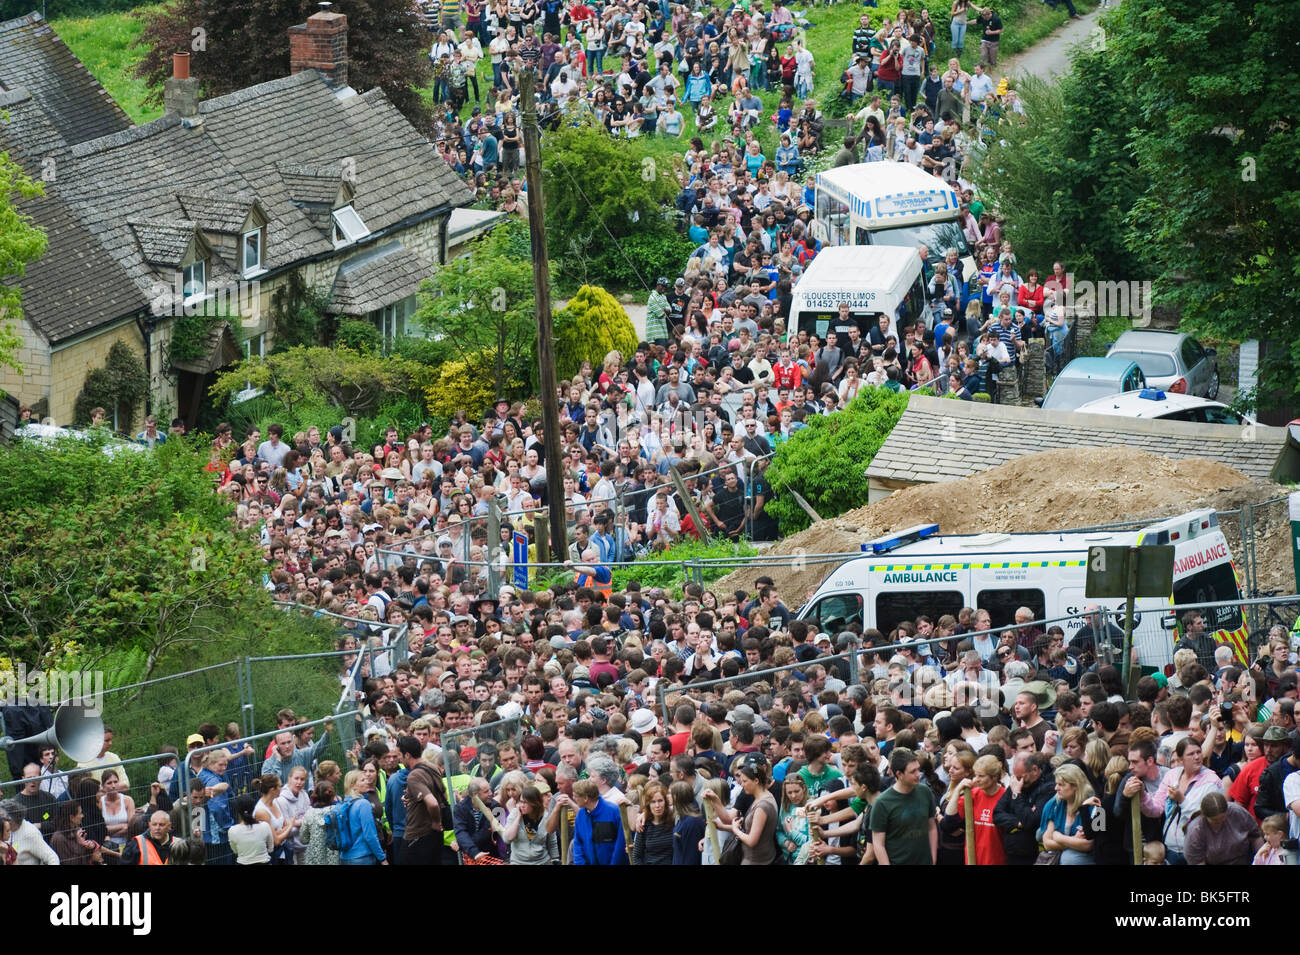 Des foules immenses et ambulanciers au matériel roulant Fromage Festival, Coopers Hill, Gloucestershire, Angleterre, Royaume-Uni, Europe Banque D'Images